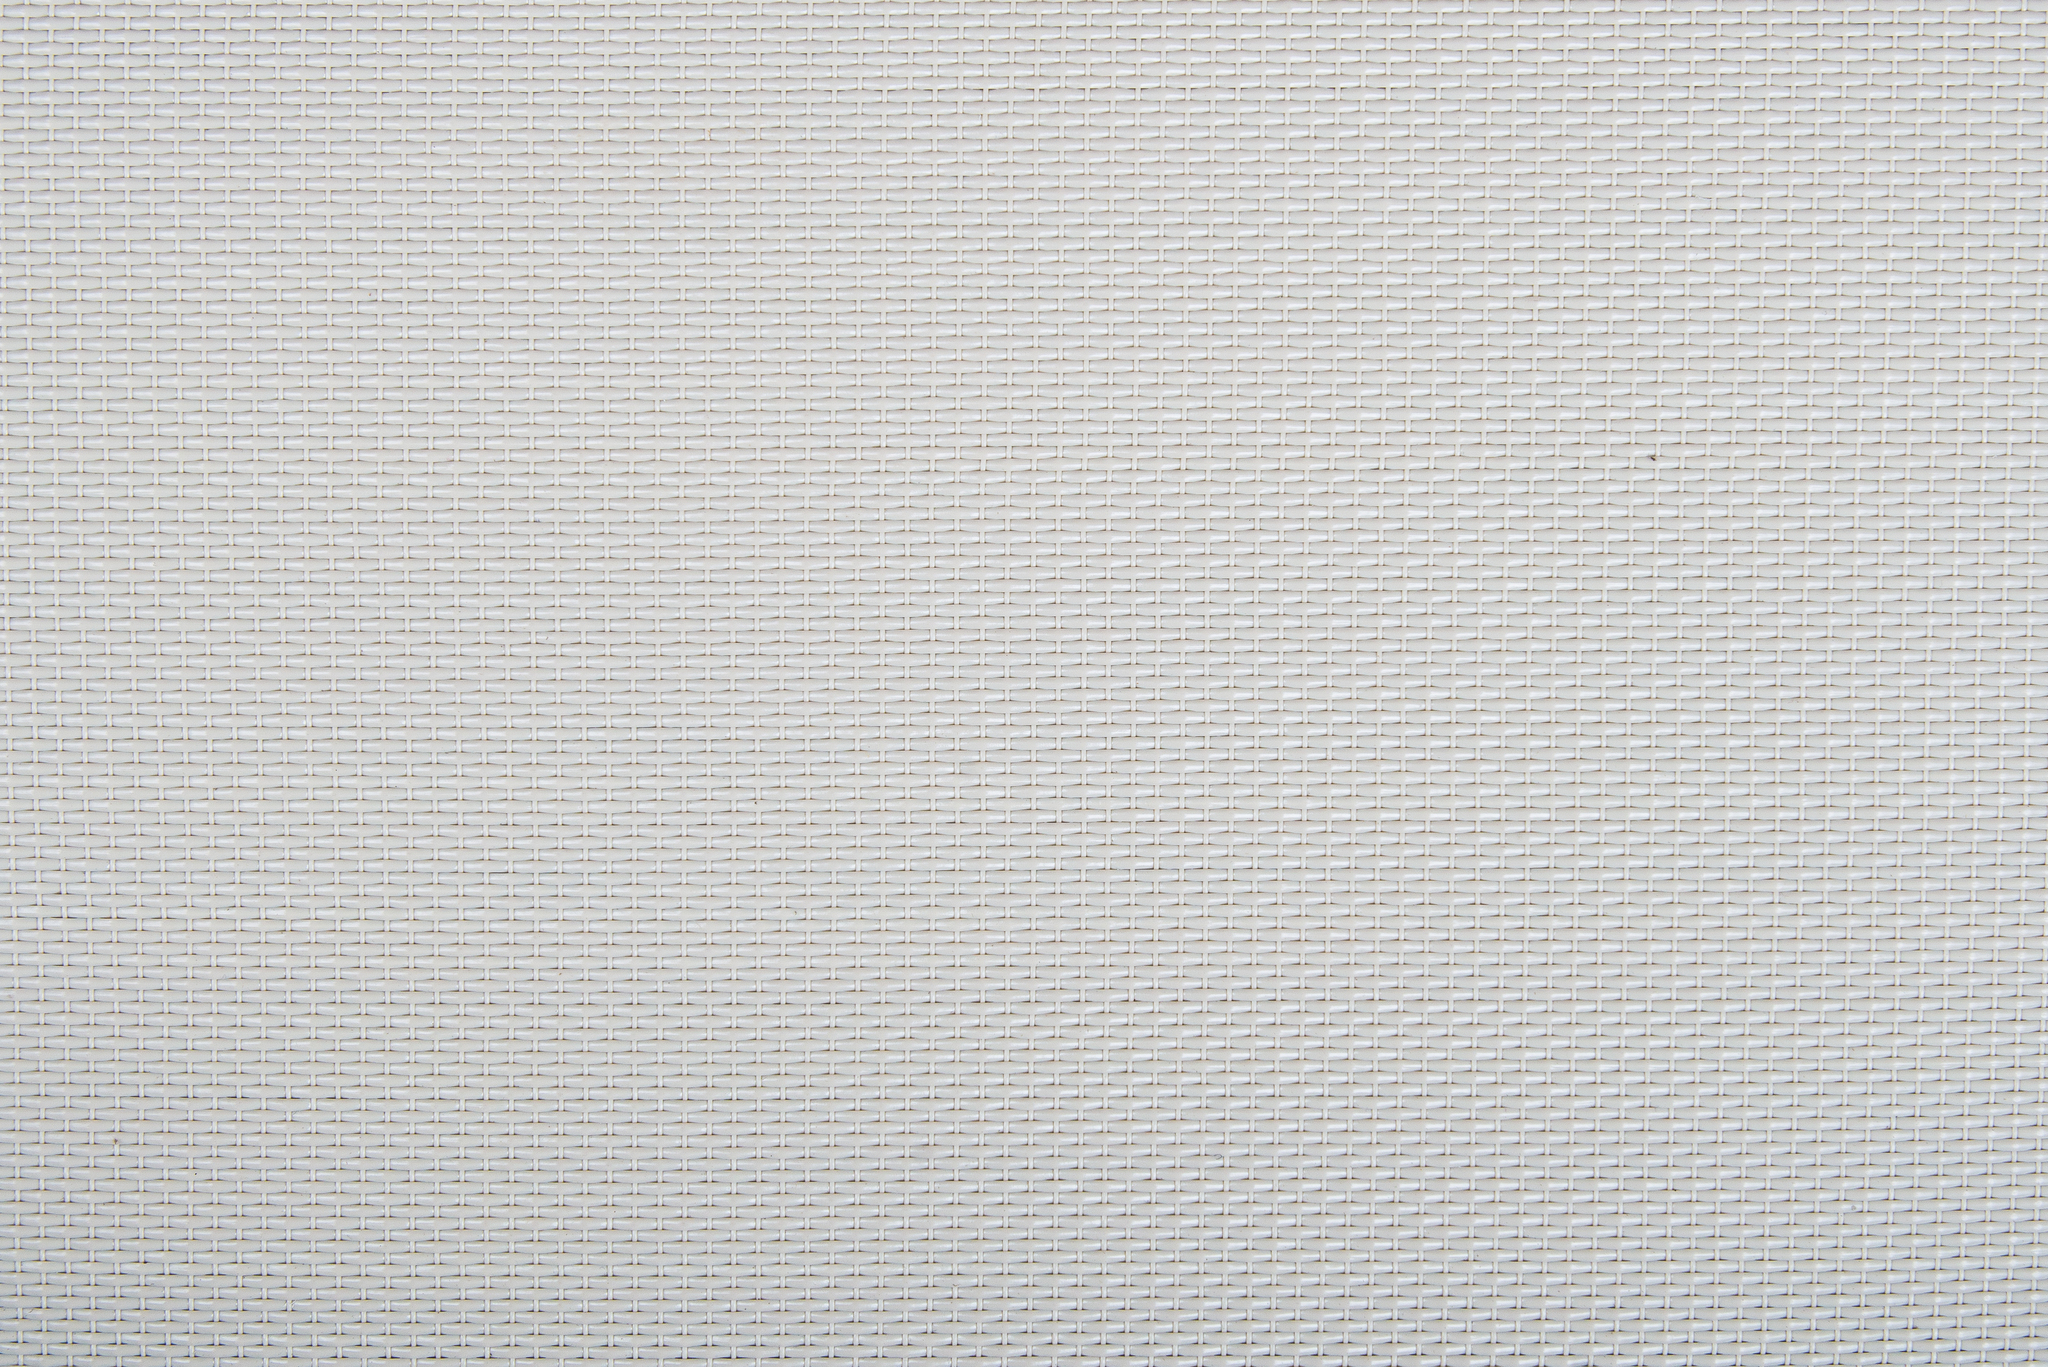 Плетеный виниловый пол Hoffmann - Duplex (ECO - 11005 BS)